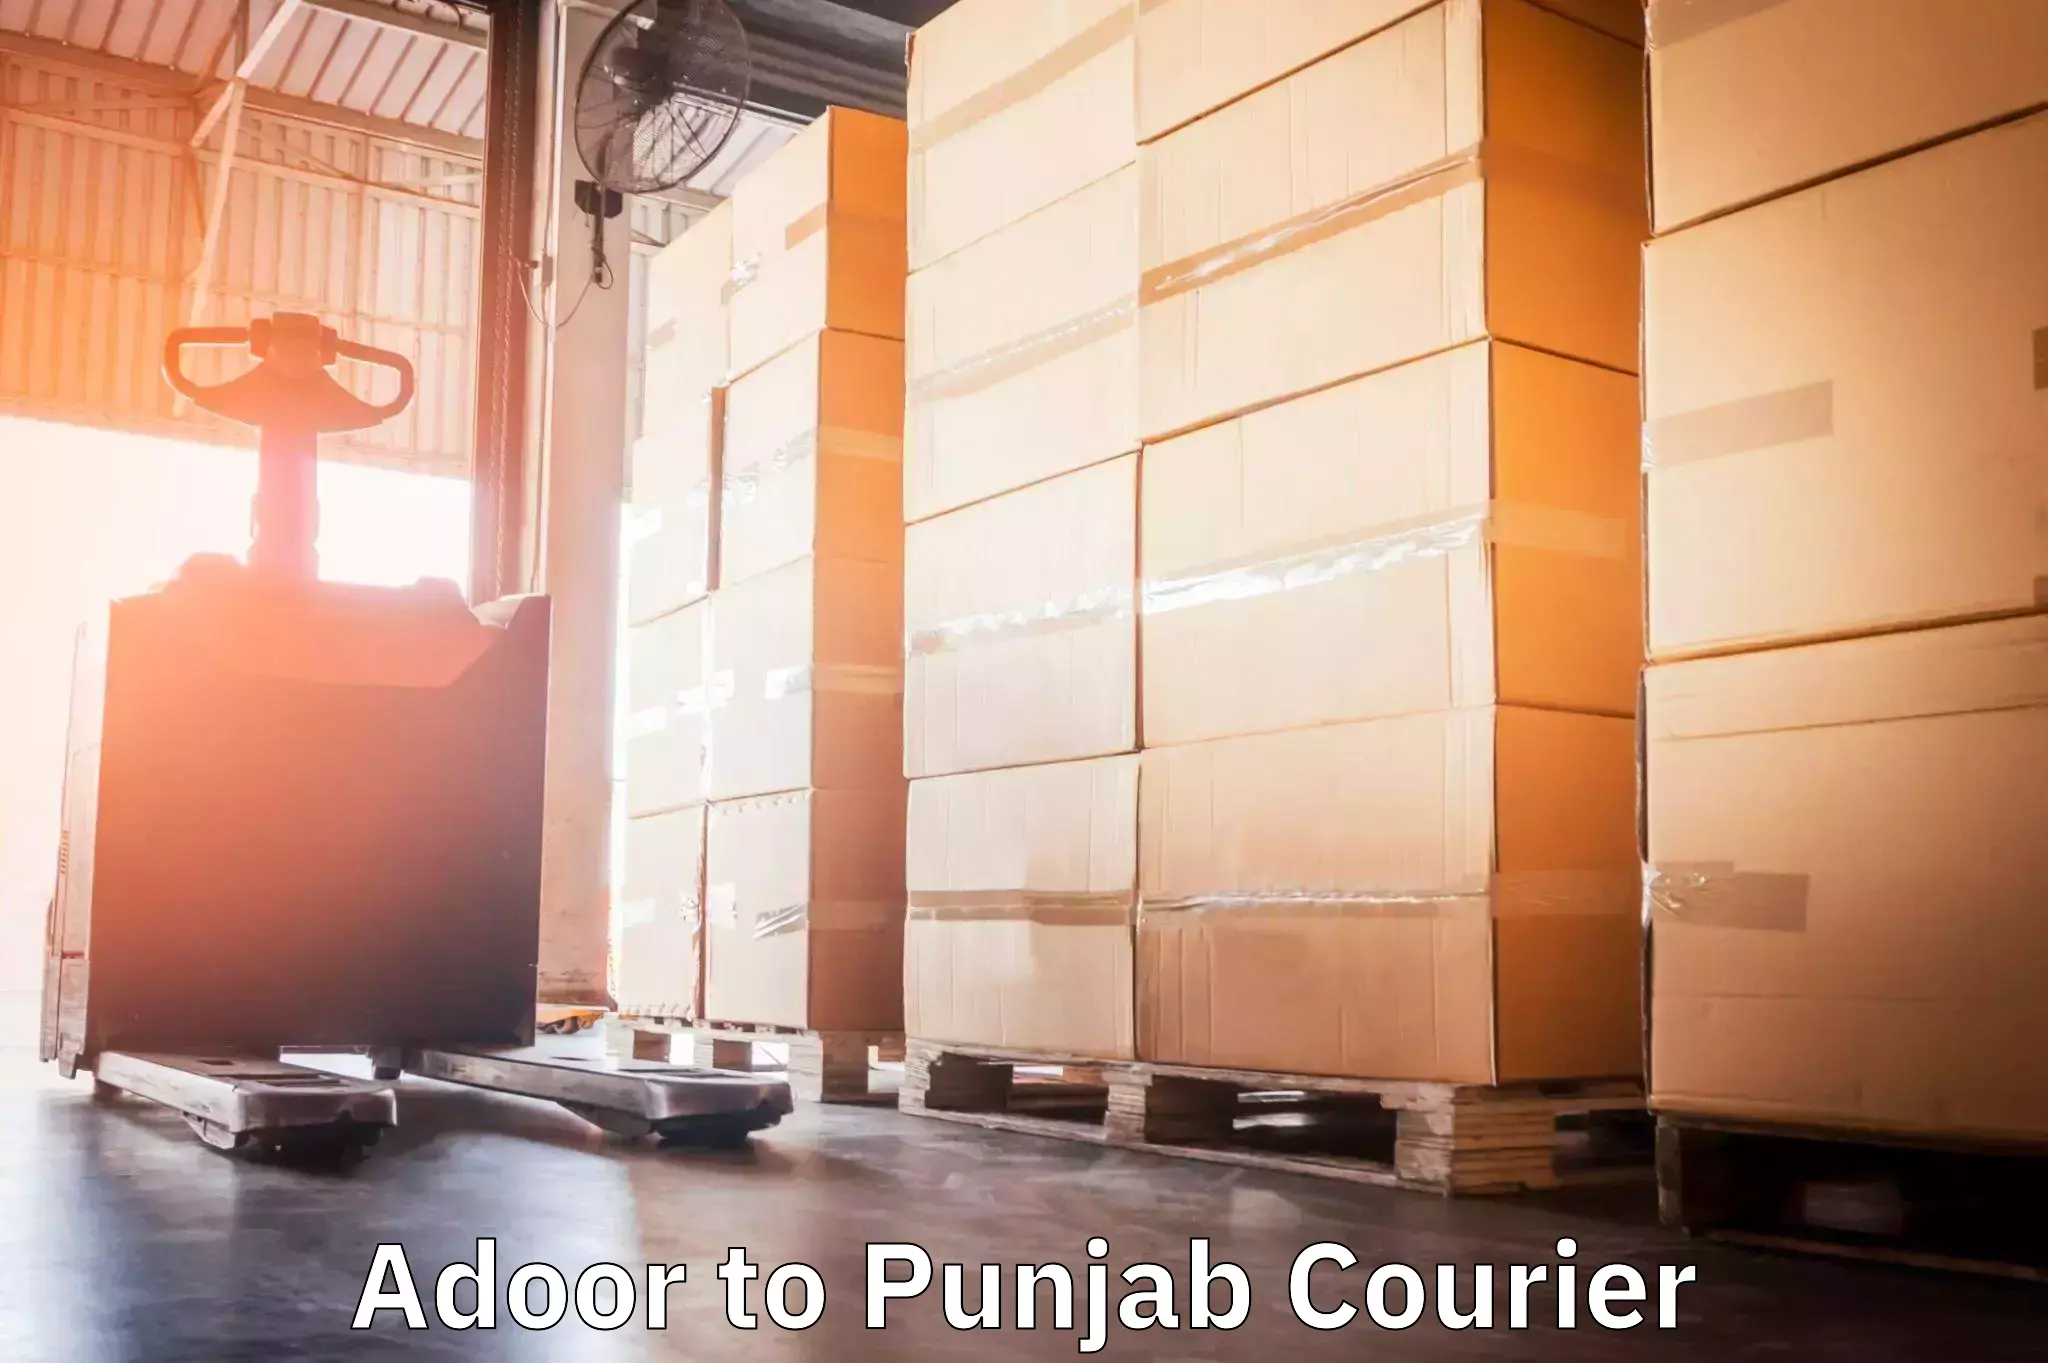 Bulk courier orders Adoor to Firozpur